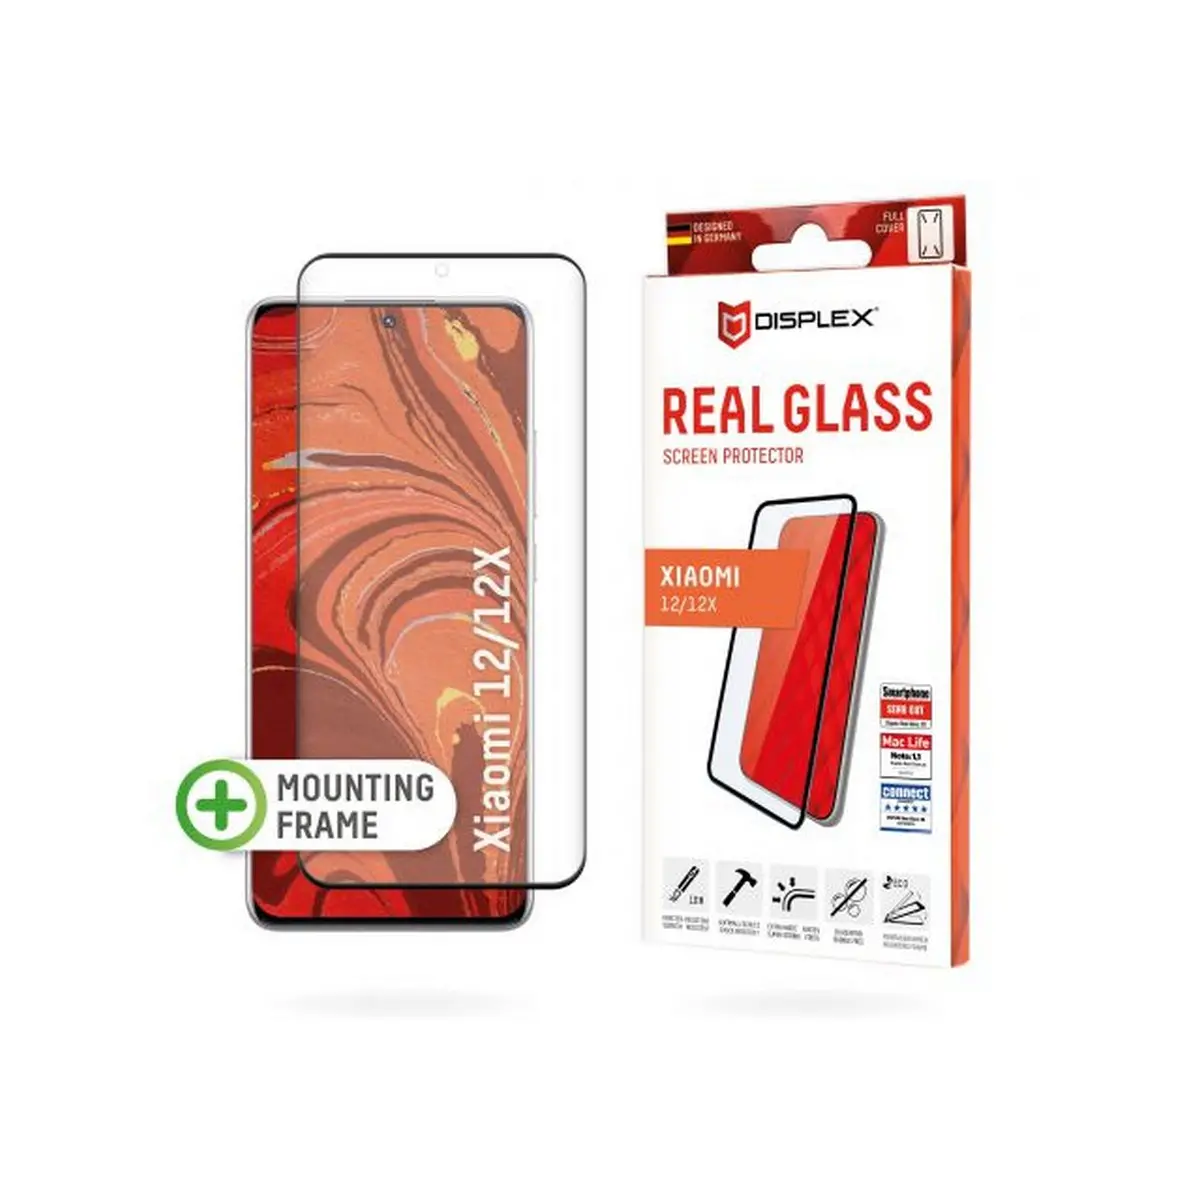 DISPLEX zaštitno staklo Real Glass 3D za Xiaomi 12/12X image